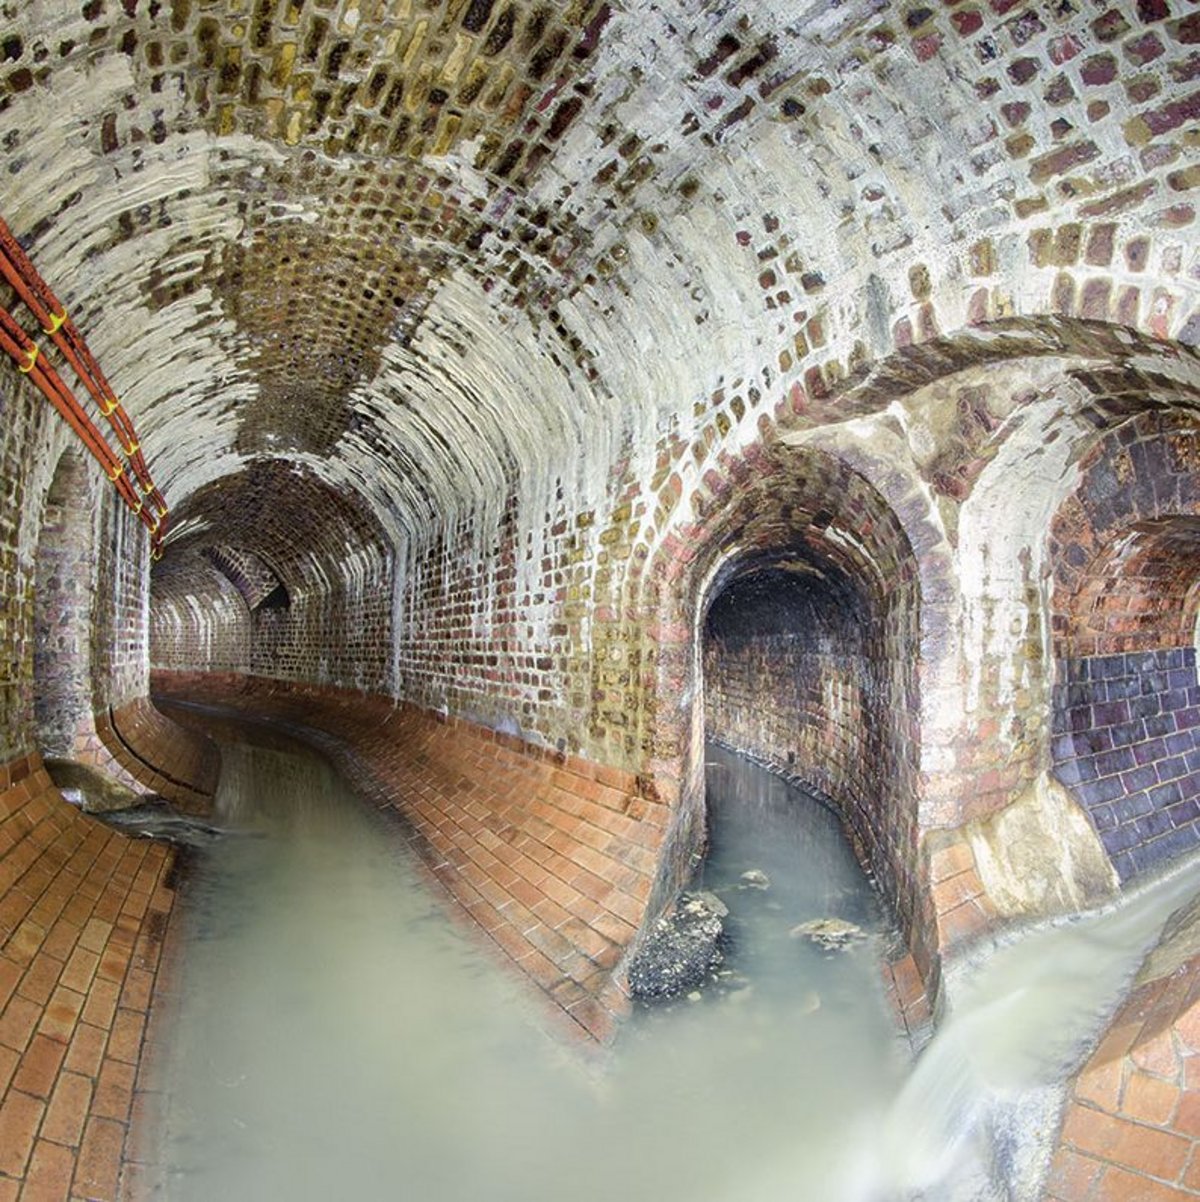 London sewer system - Wikipedia